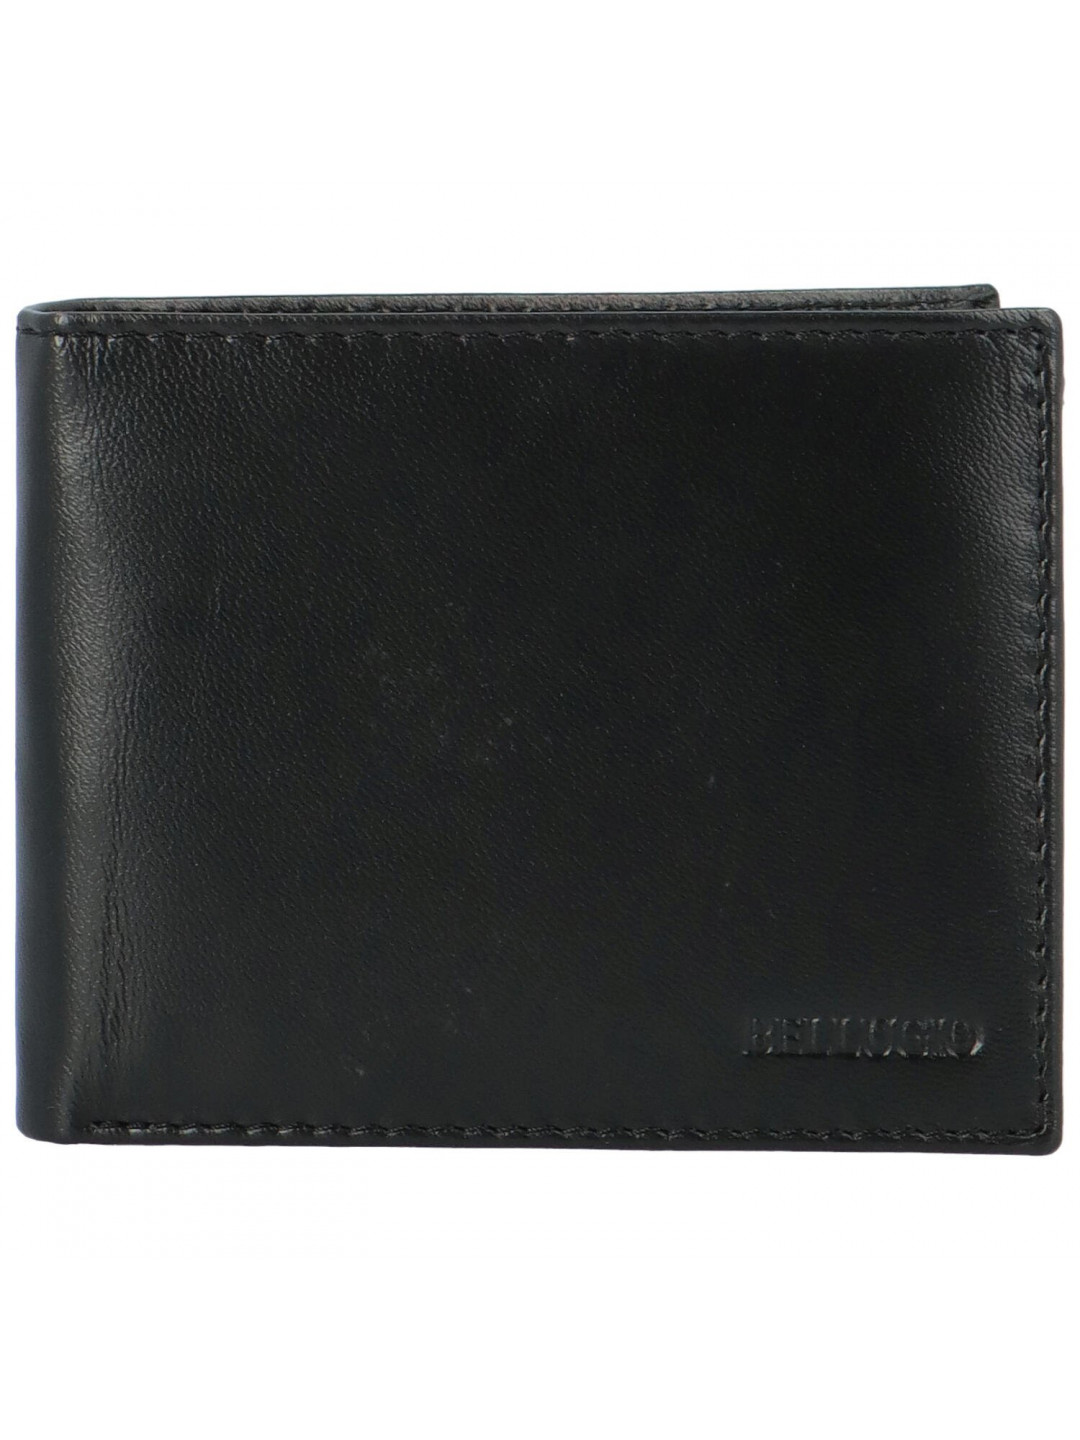 Pánská kožená peněženka na šířku Bellugio Casior černá